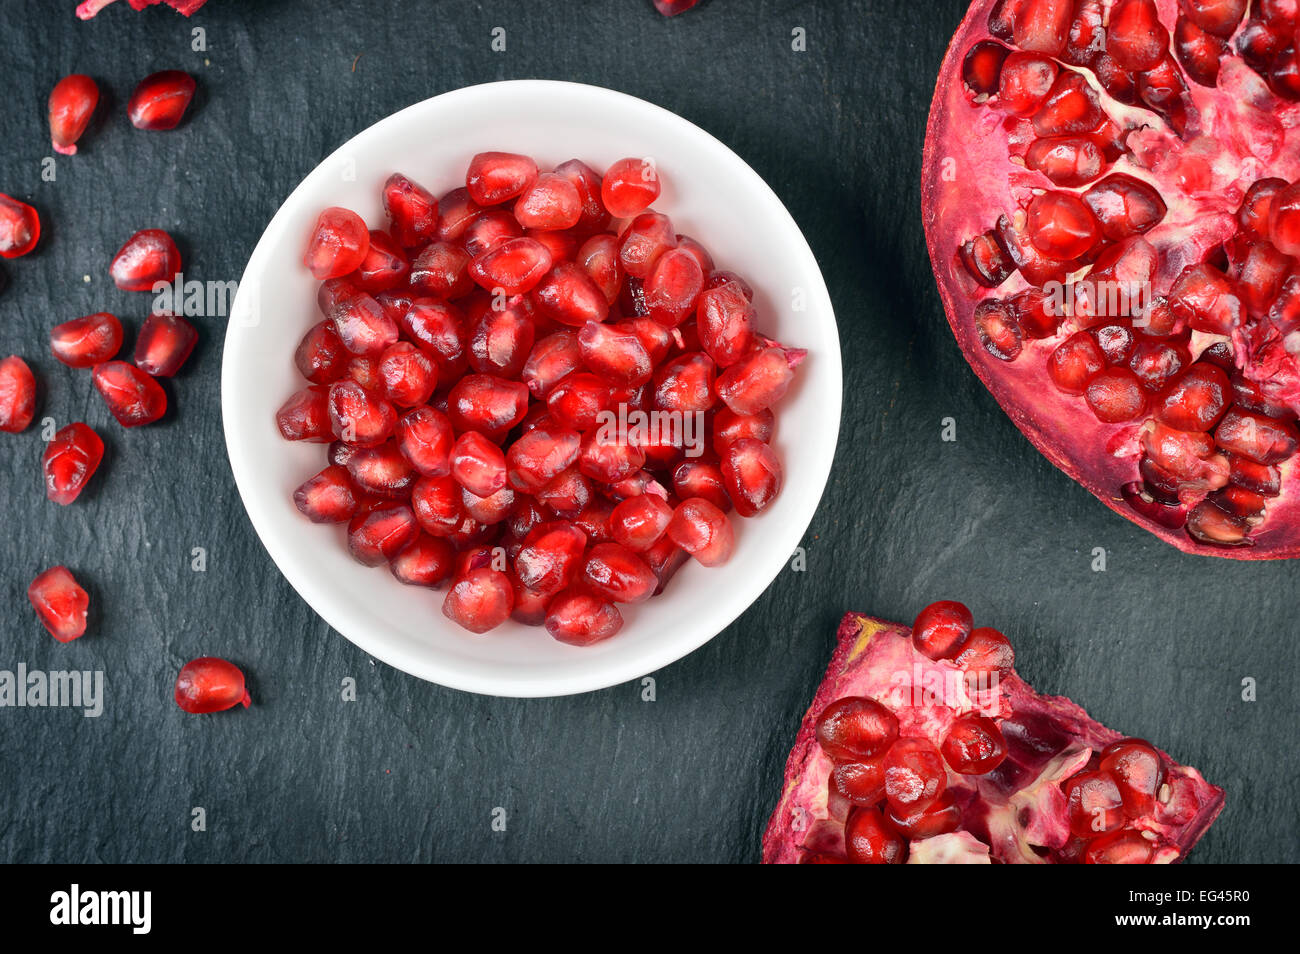 Rote Granatapfelkerne in einer weißen Schüssel auf den Tisch. Offenen frischen Reifen Granatapfel. Stockfoto